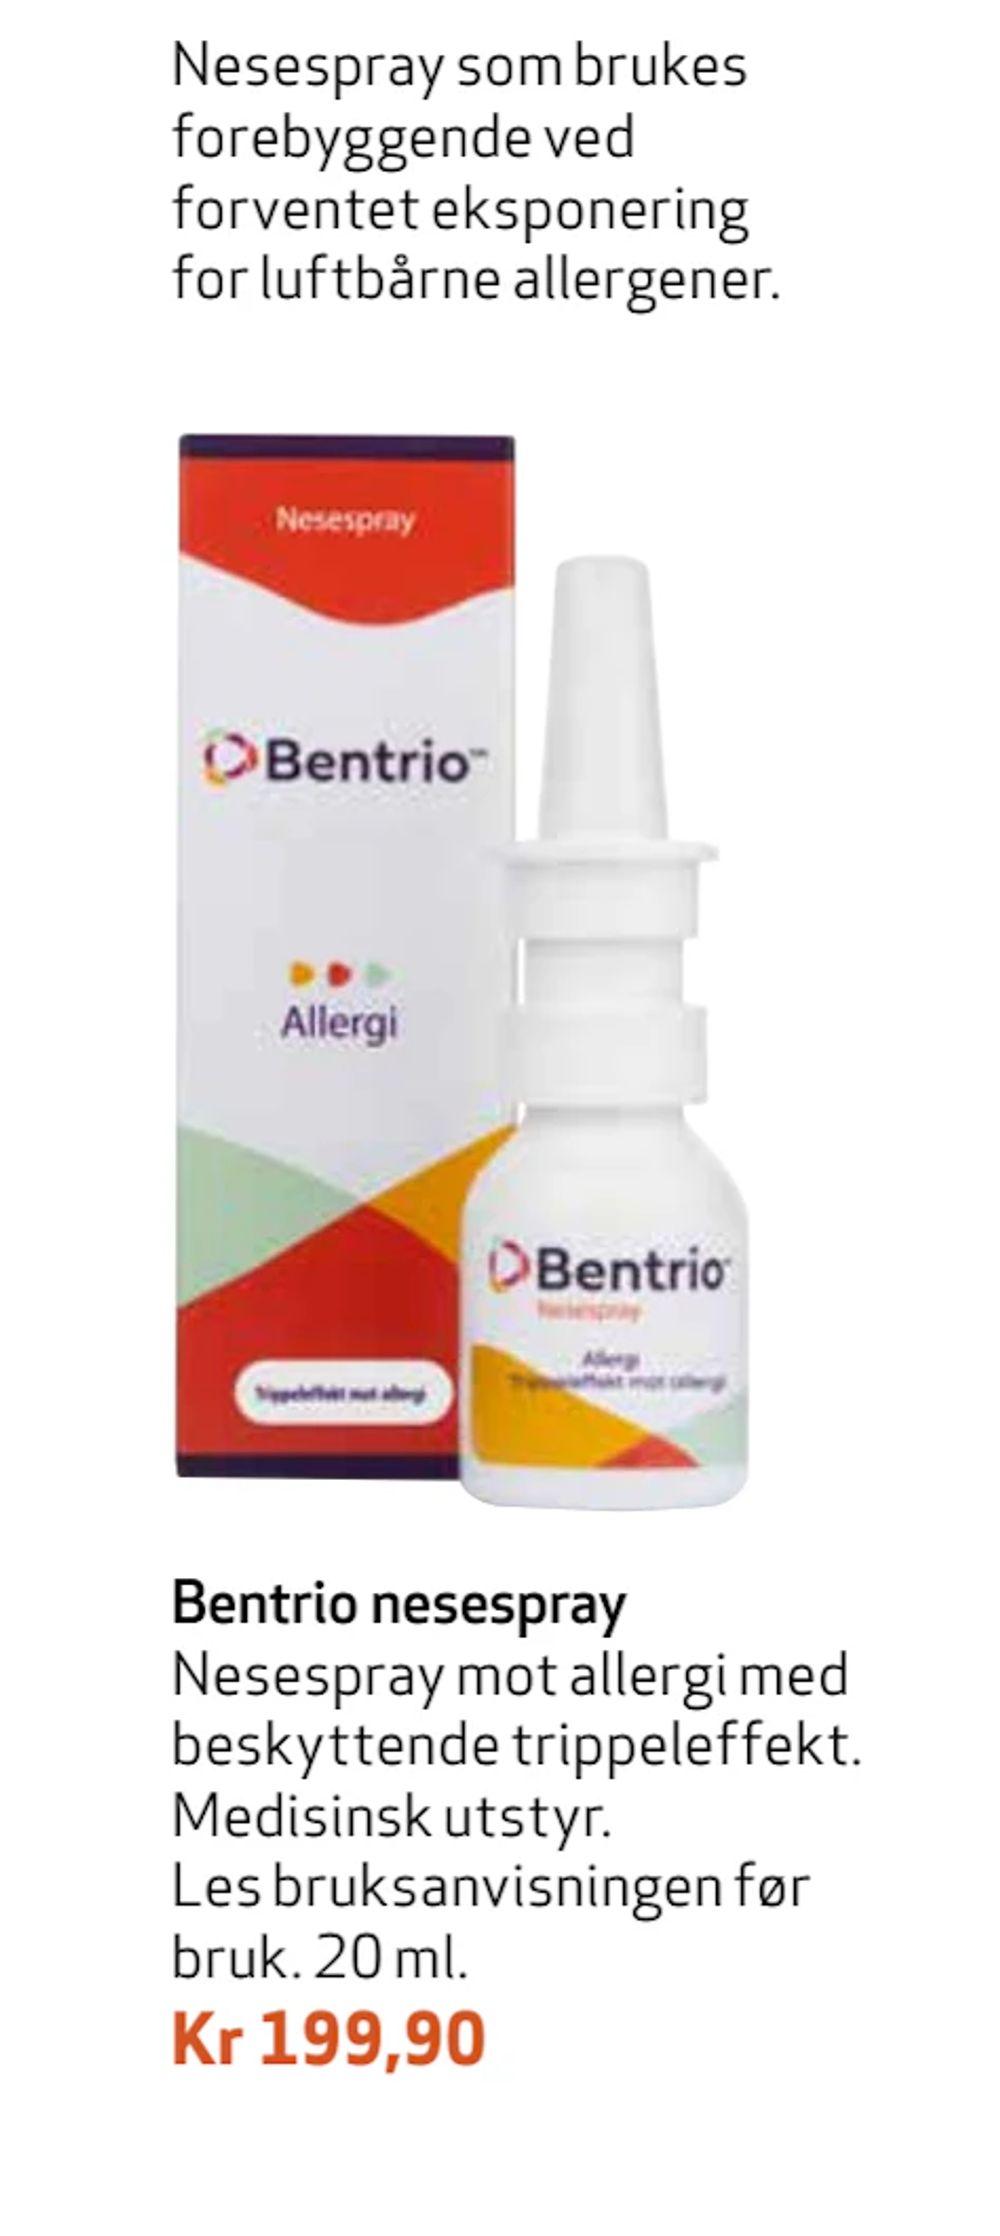 Tilbud på Bentrio nesespray fra Apotek 1 til 199,90 kr